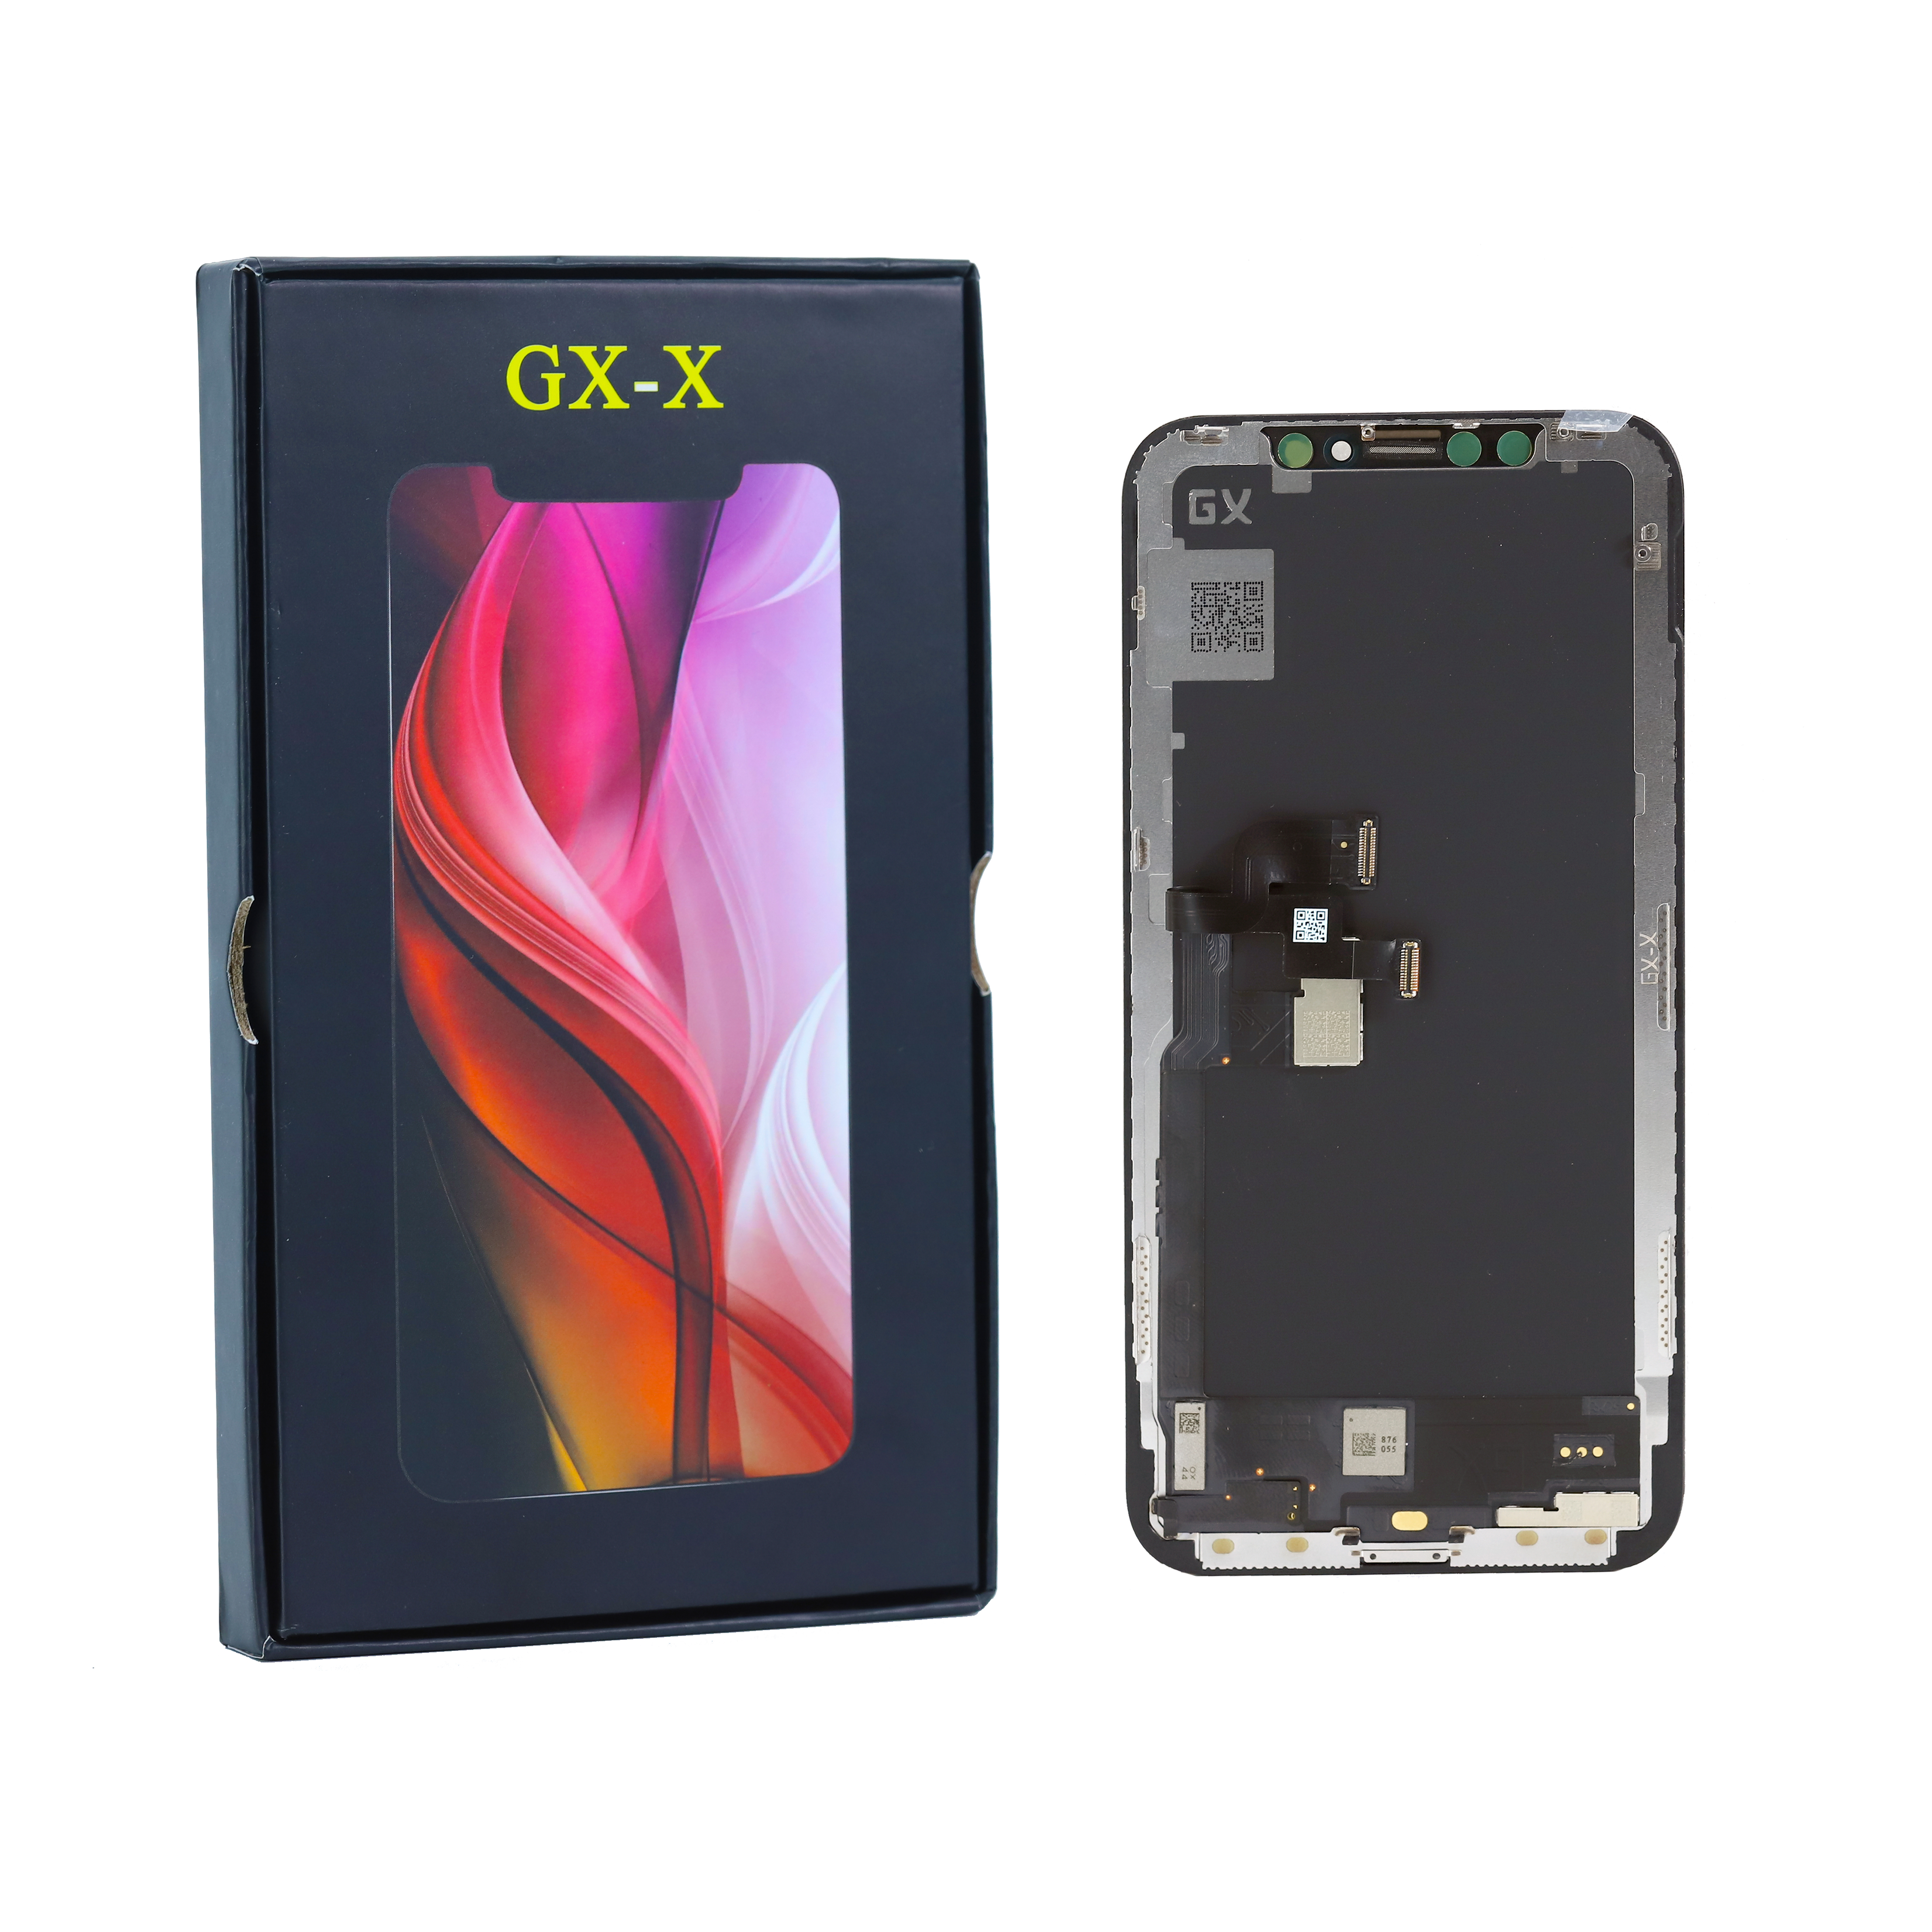 【GX】iPhone X リペア用  GX-X HARD OLED  有機EL  （サードパーティ製品）